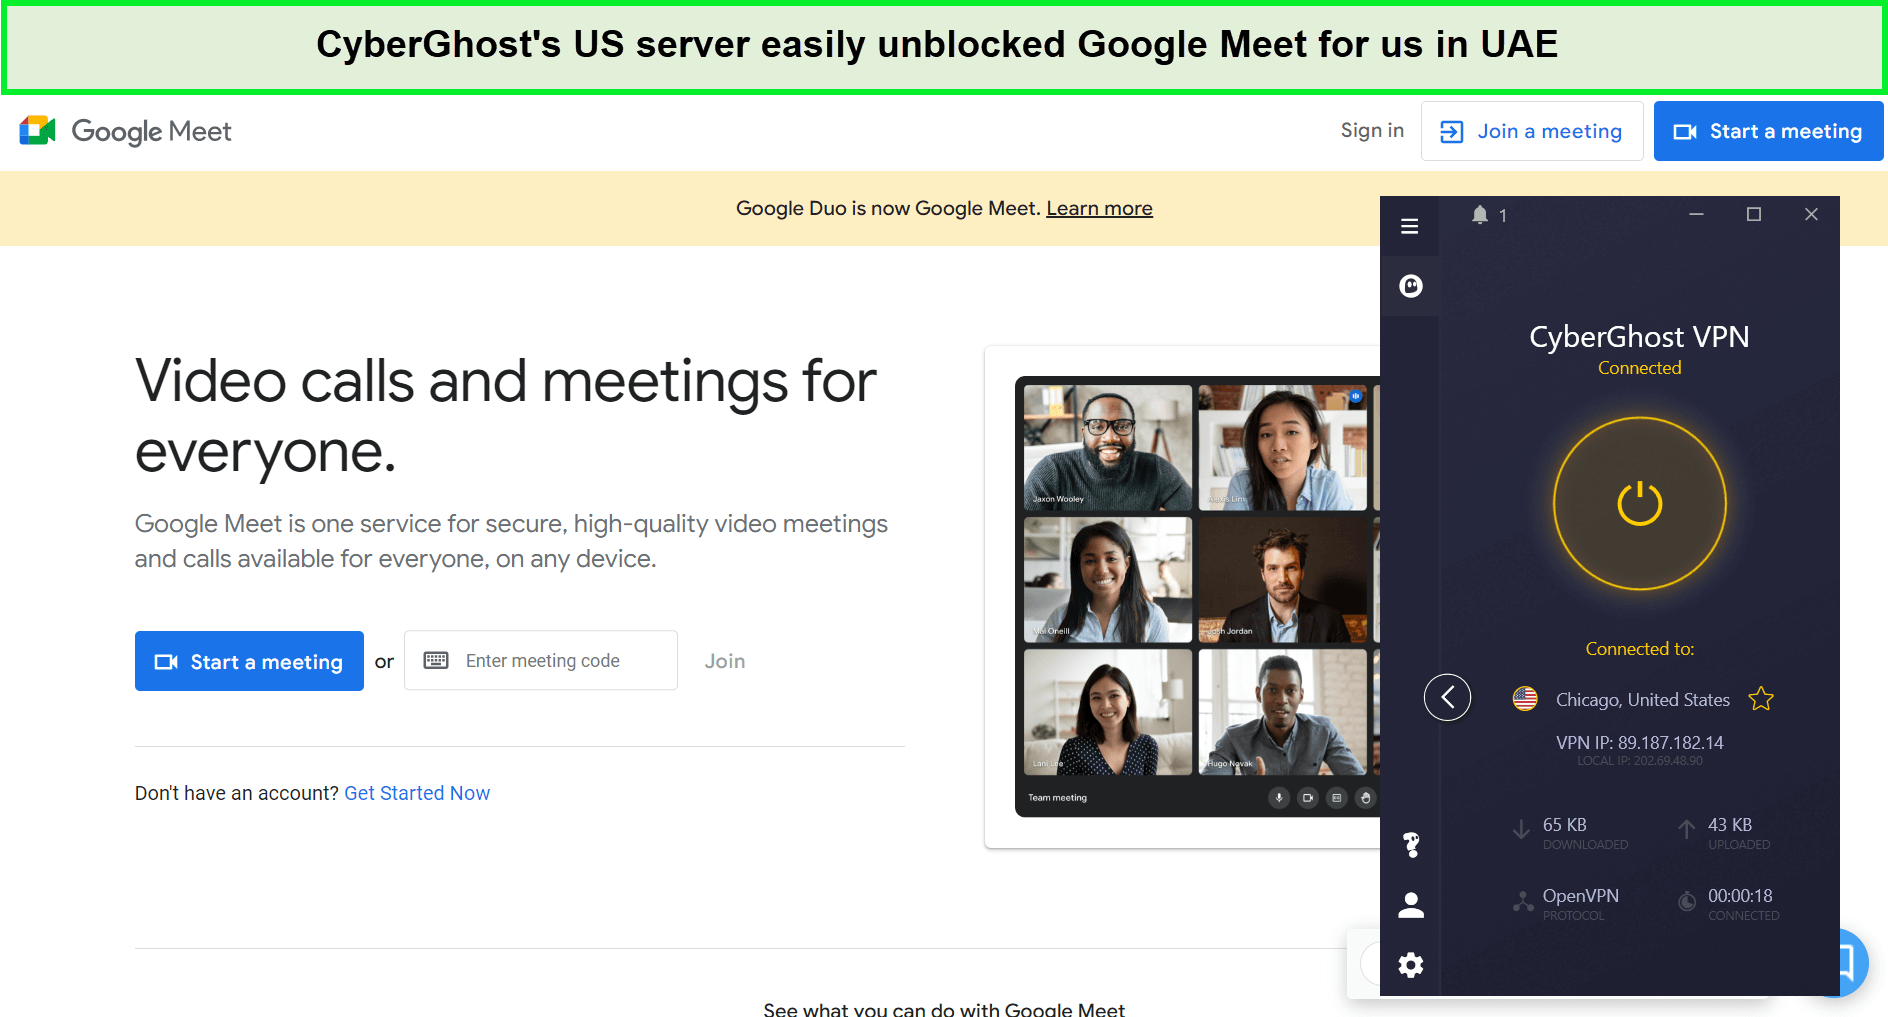  Cyberghost-Google-Meet freigeschaltet  